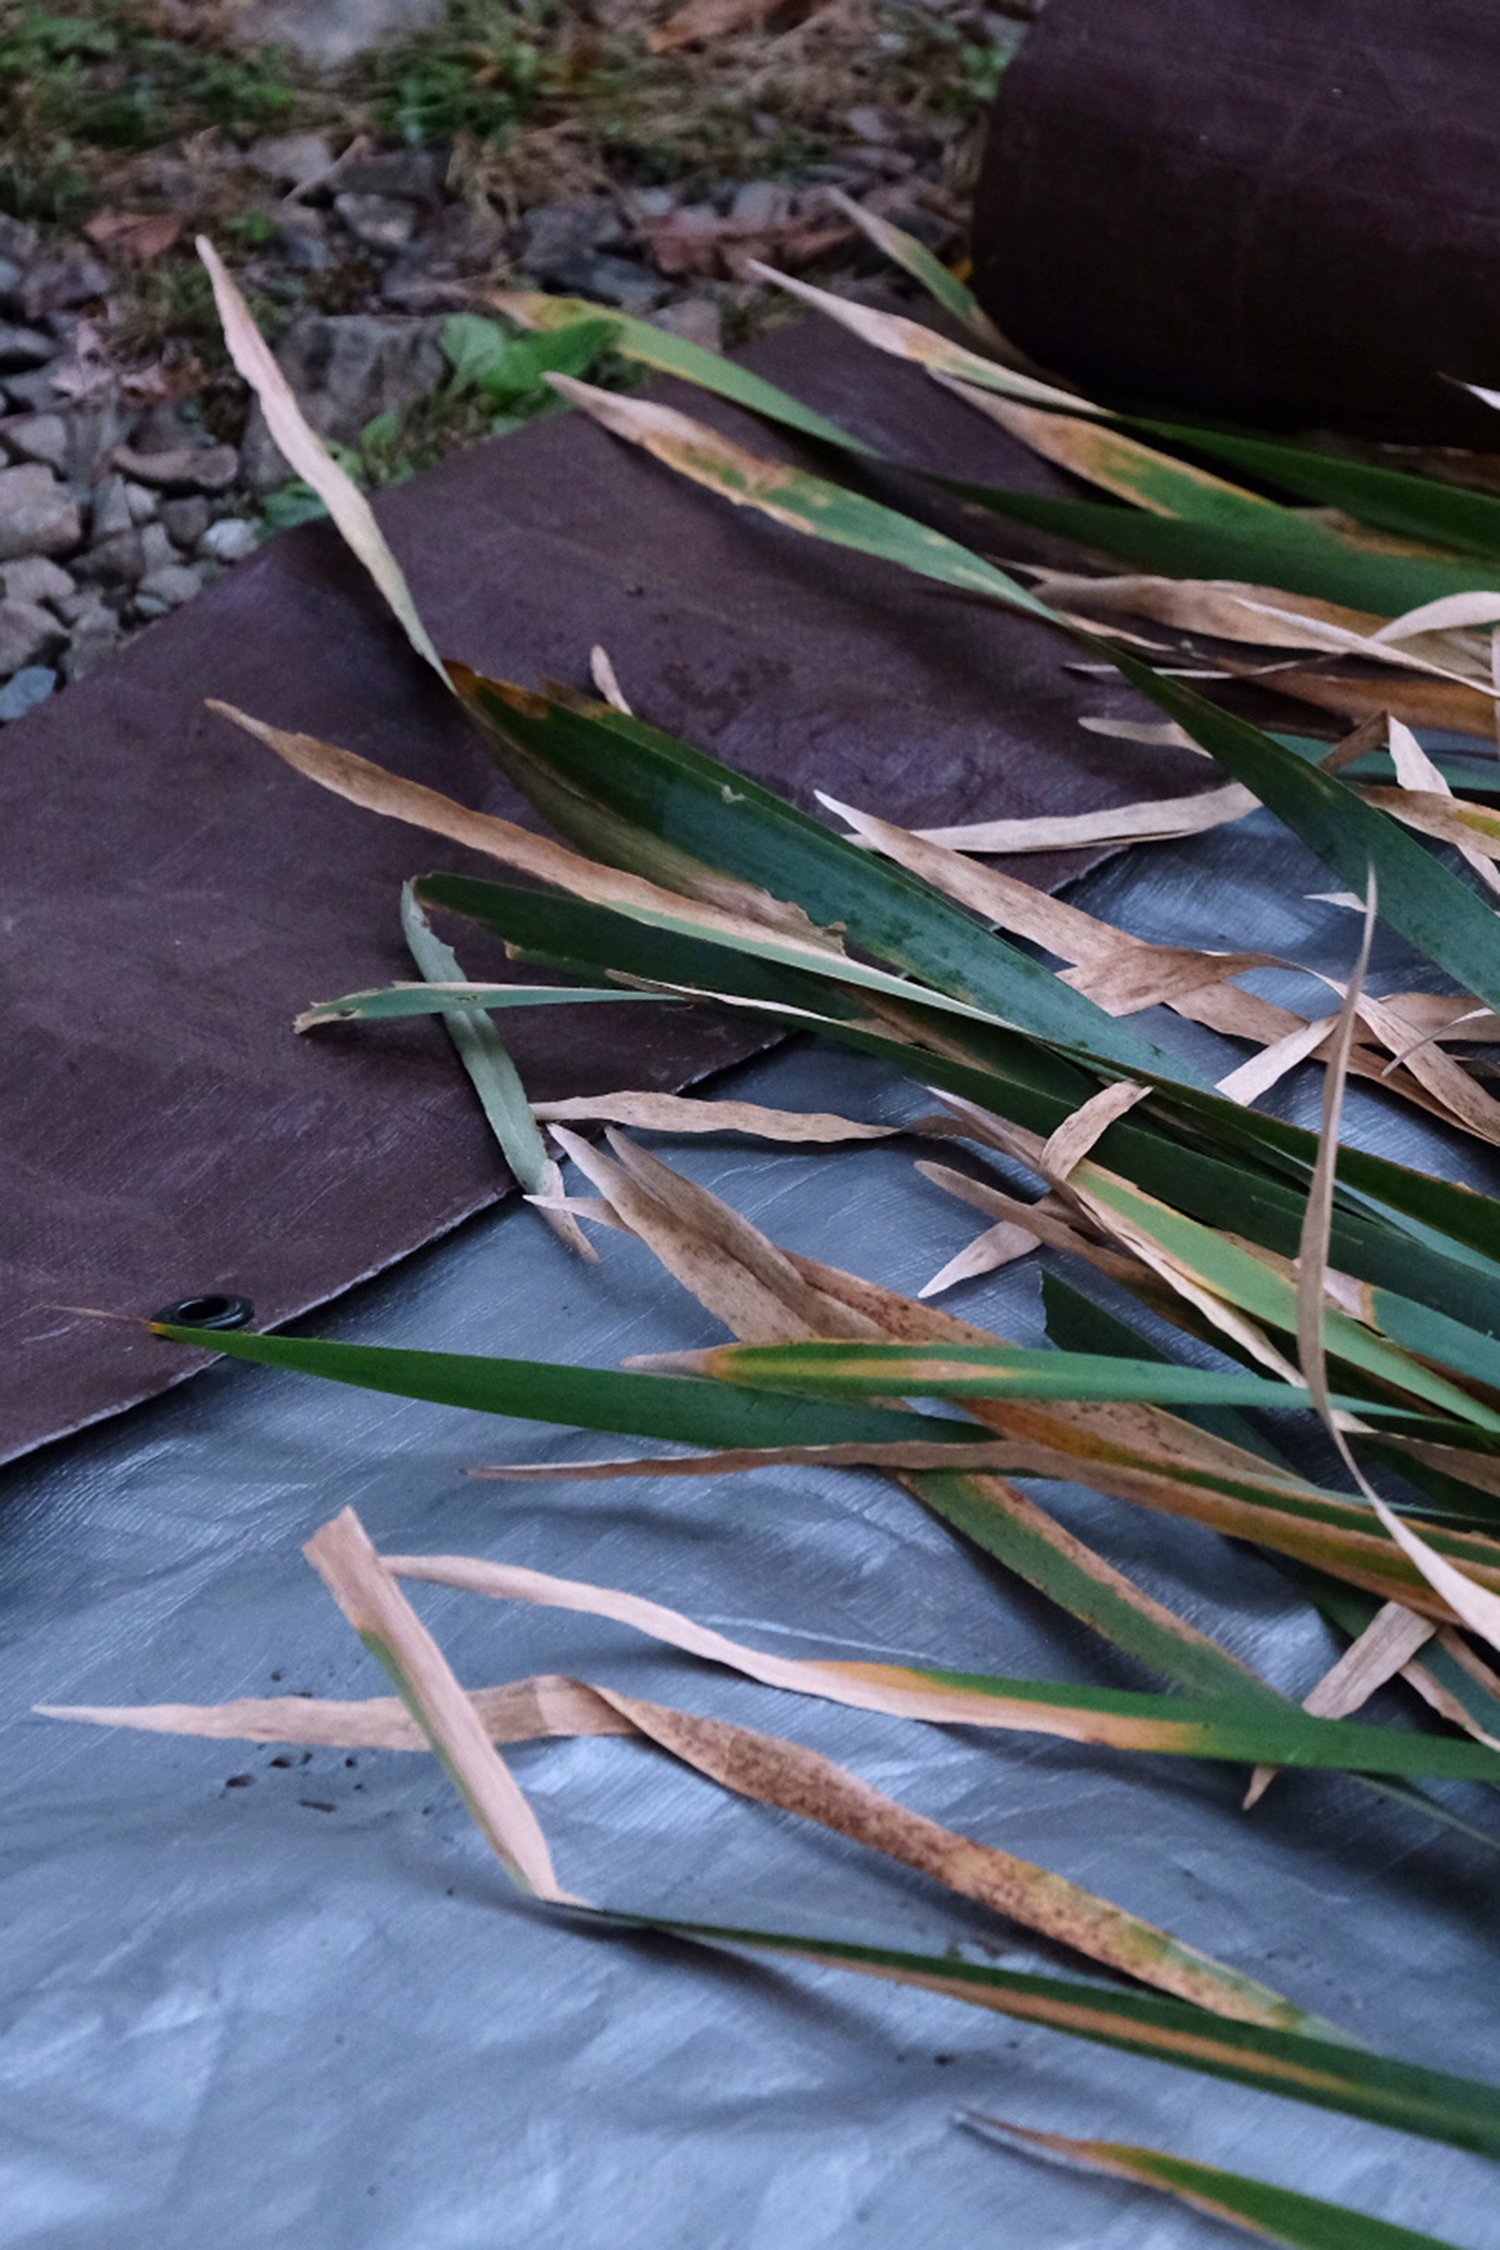 cattail leaves on tarp.jpg